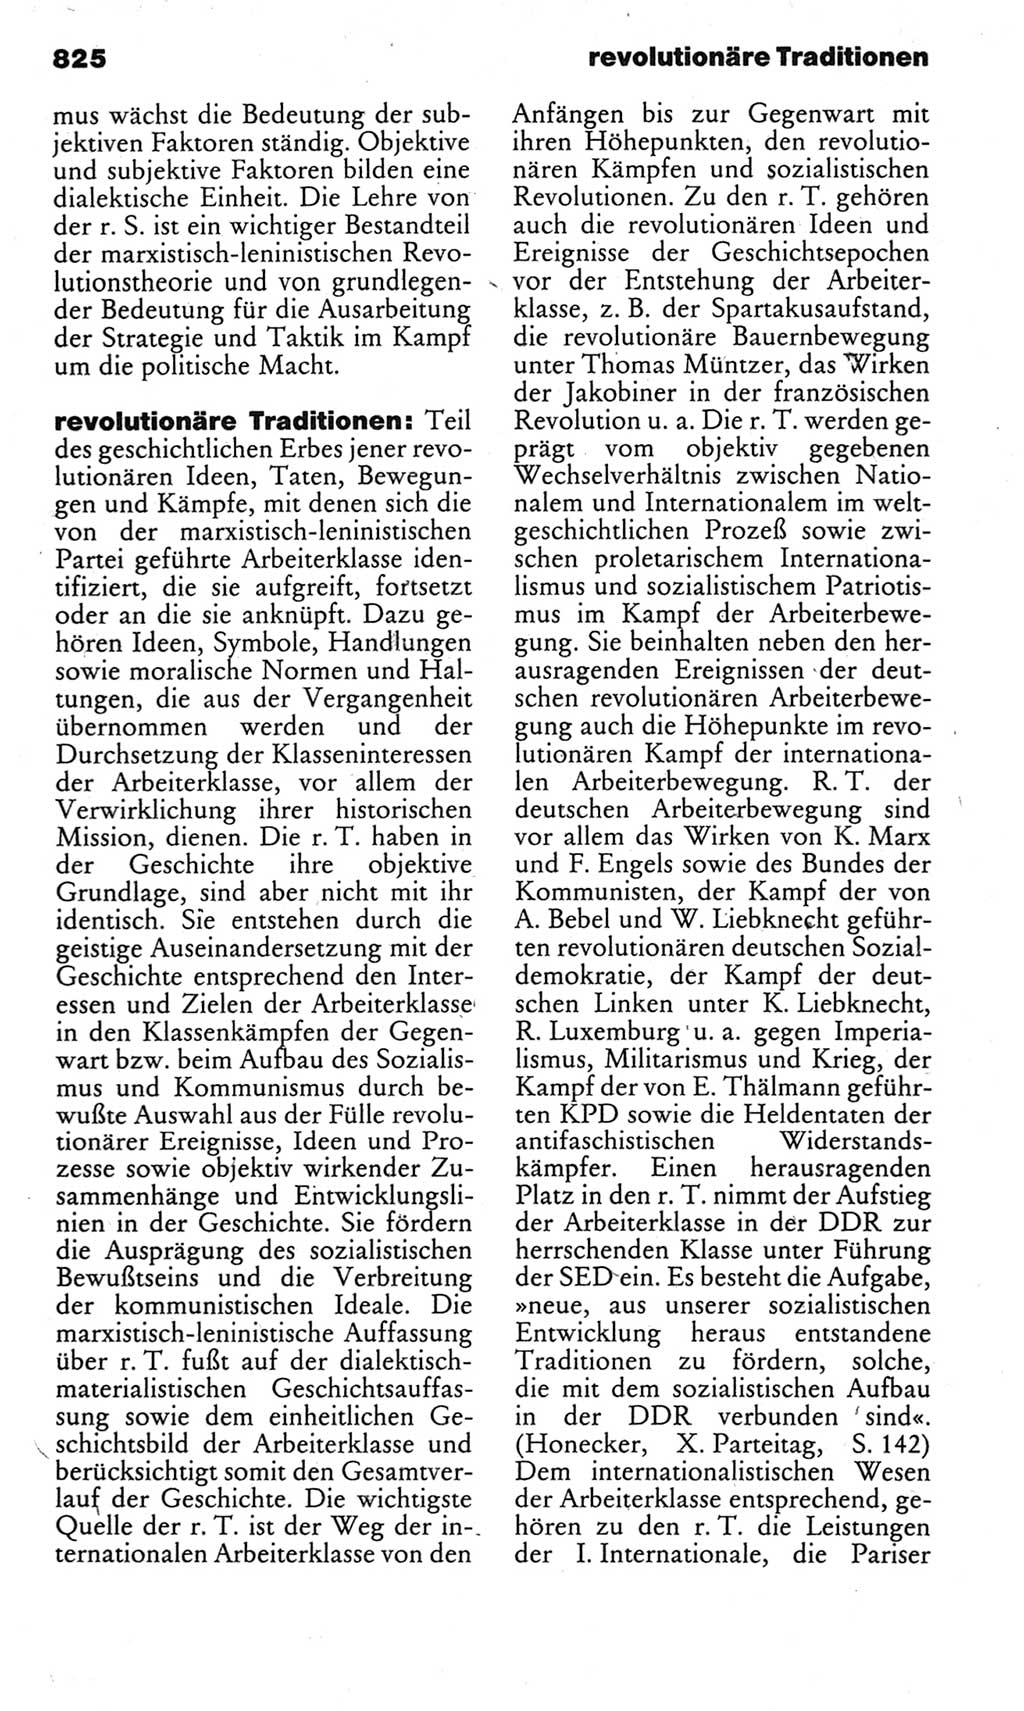 Kleines politisches Wörterbuch [Deutsche Demokratische Republik (DDR)] 1983, Seite 825 (Kl. pol. Wb. DDR 1983, S. 825)